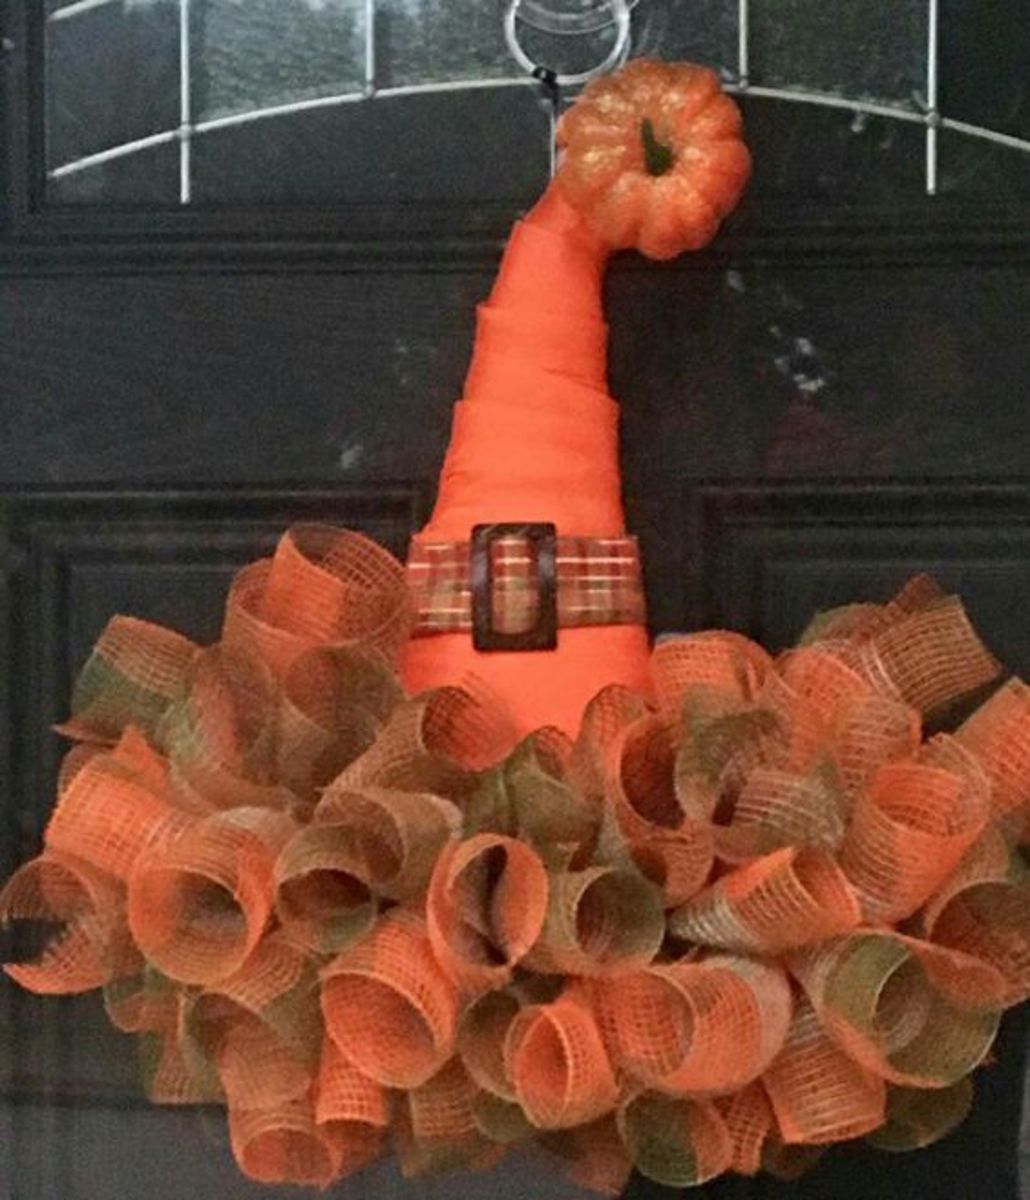 halloween-wreaths-for-front-door